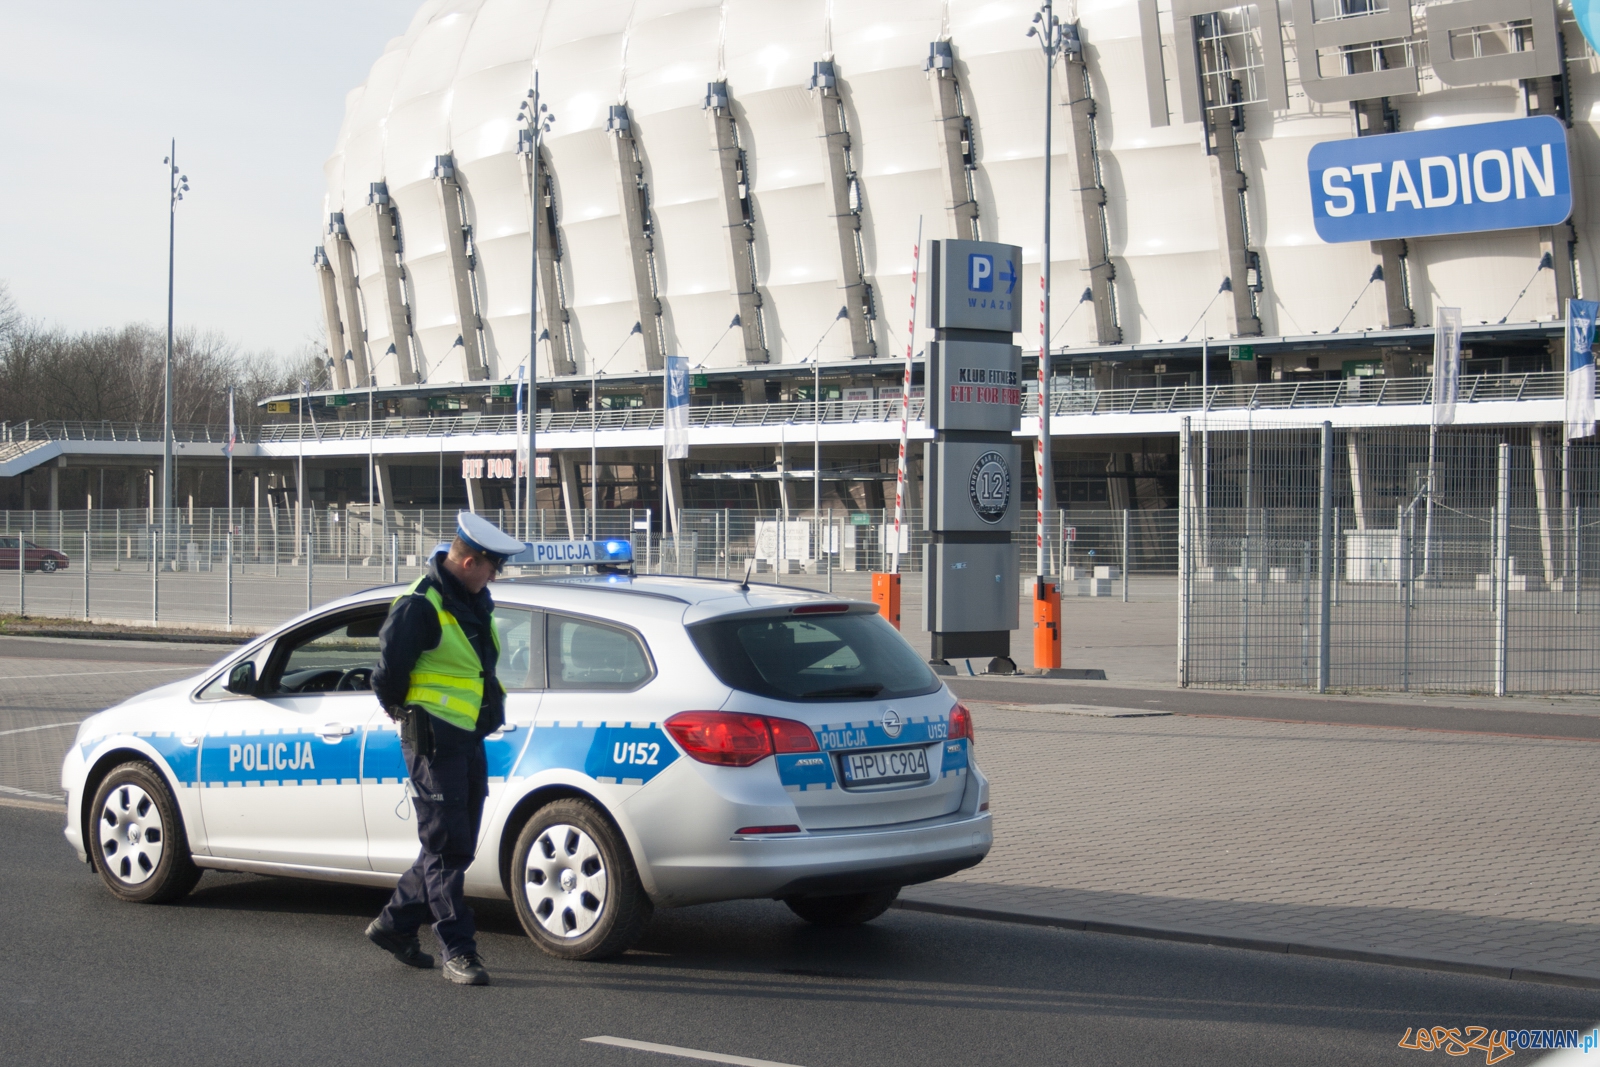 Policja przy Inea Stadionie / policjant / radiowóz  Foto: © lepszyPOZNAN.pl / Karolina Kiraga